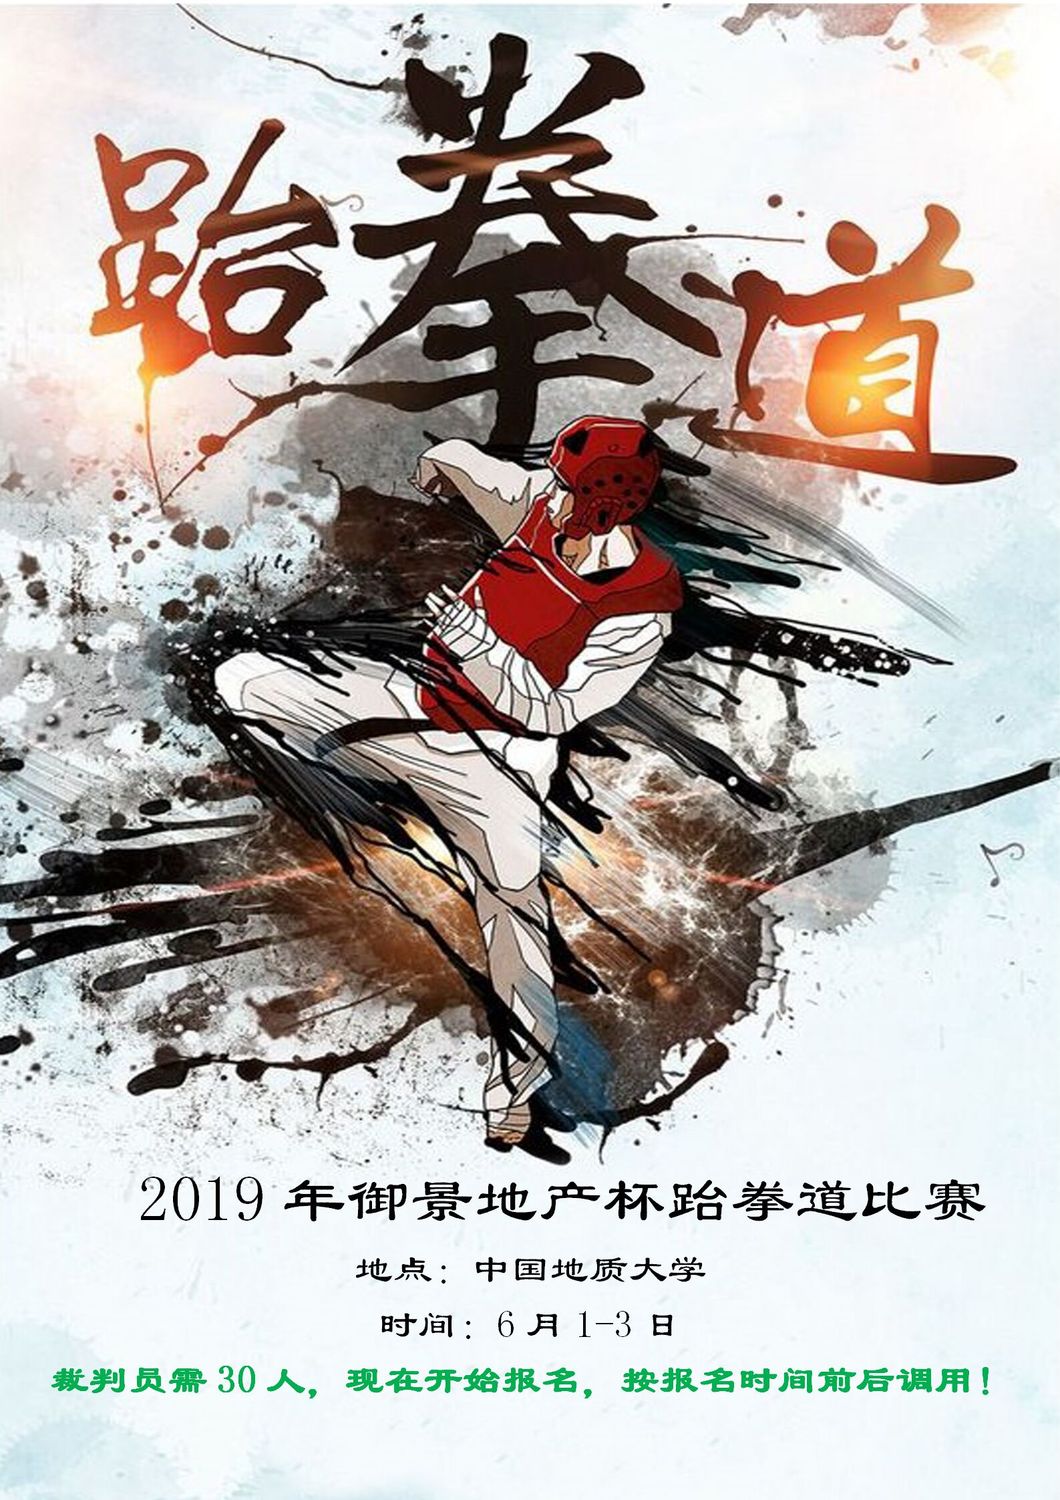 赛事2-2019年御景地产杯跆拳道比赛6月1日-3日_01.jpg